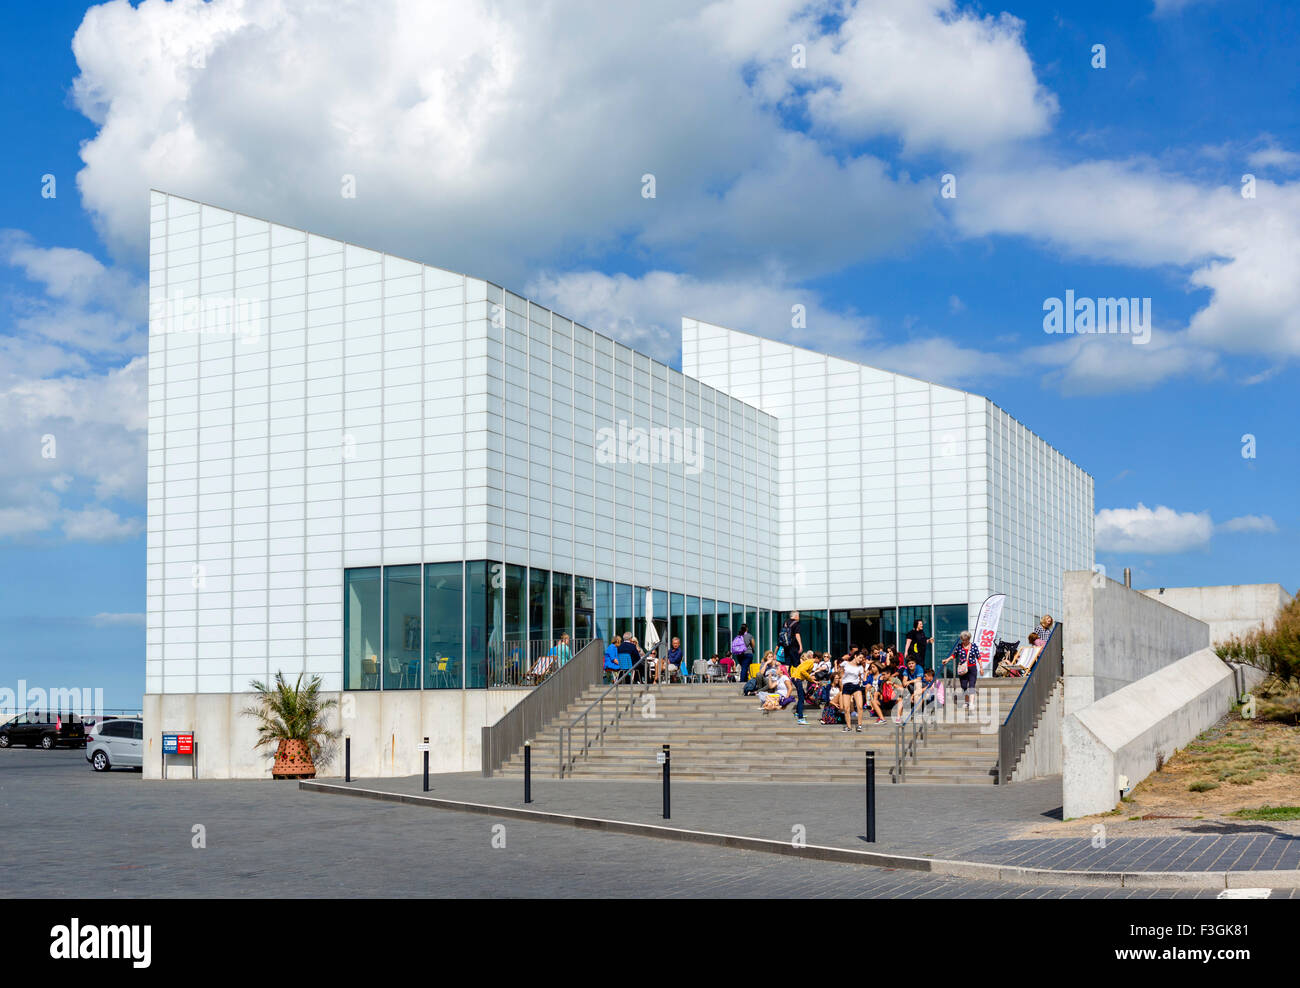 La galería de arte contemporáneo de Turner en Margate, Kent, Inglaterra, Reino Unido. Foto de stock